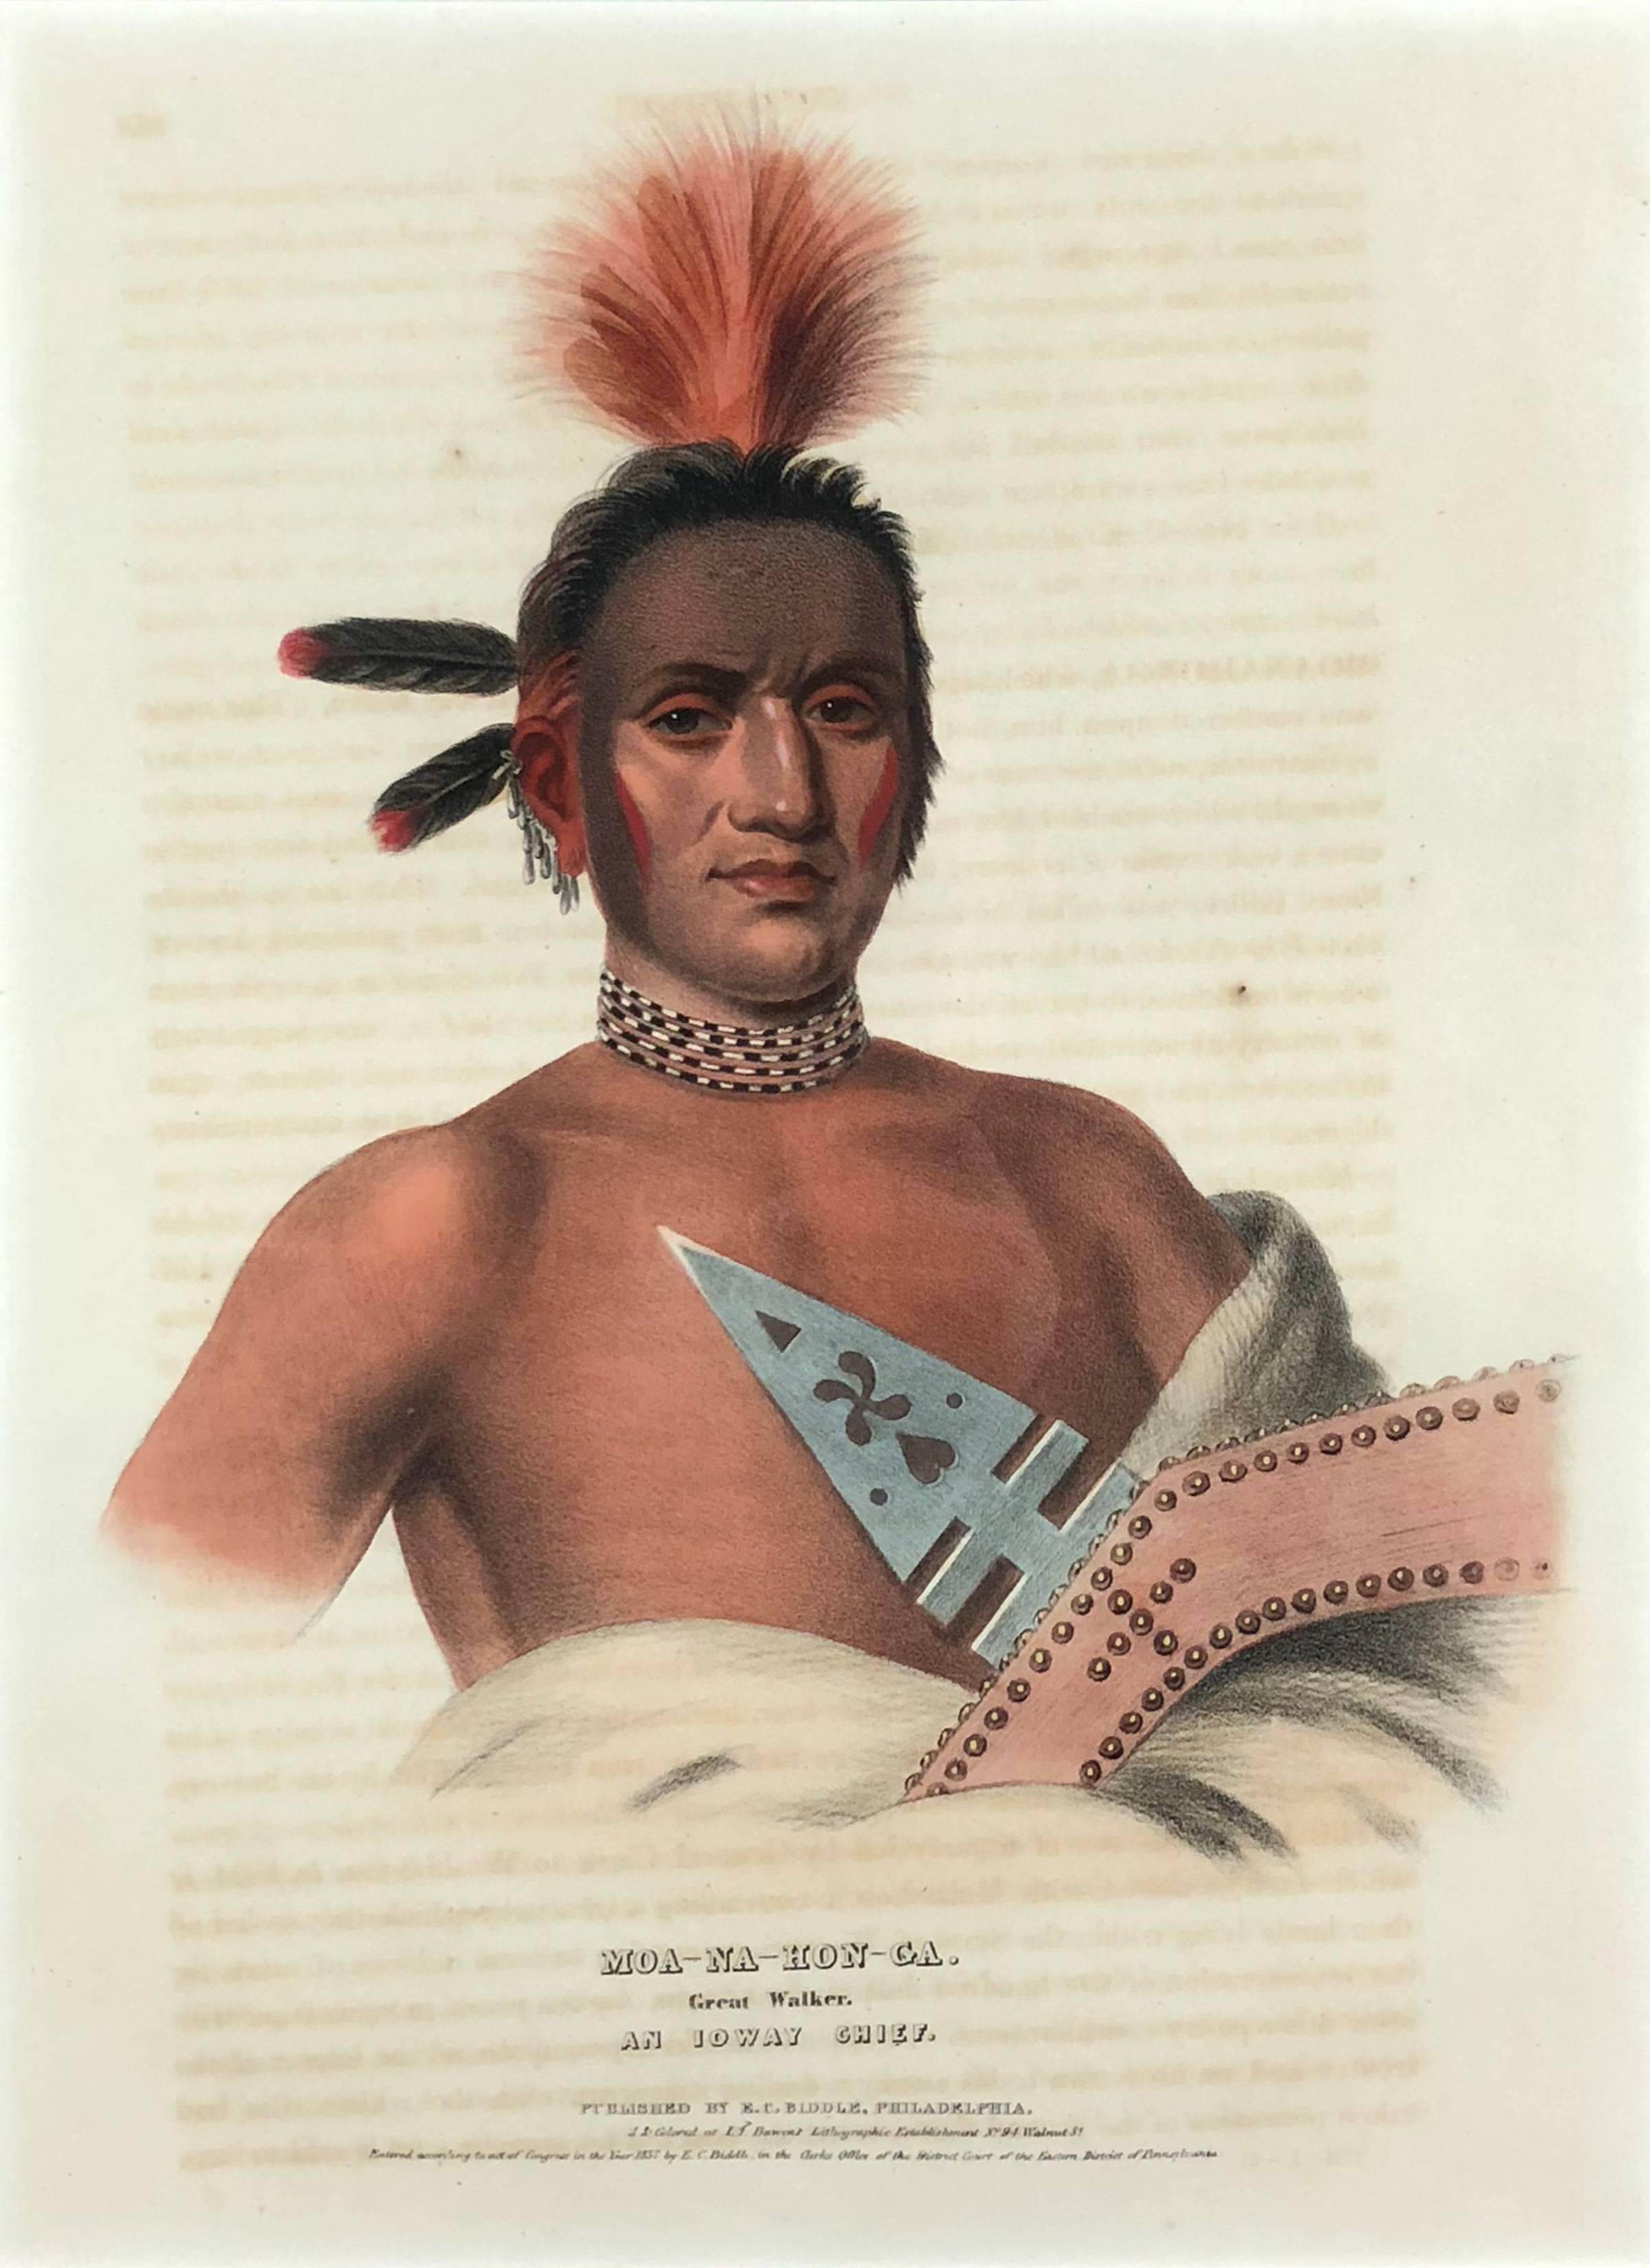 McKenney & Hall Portrait Print – Moa-Na-Hon-Ga, Großer Walker, Ein Chief von Ioway